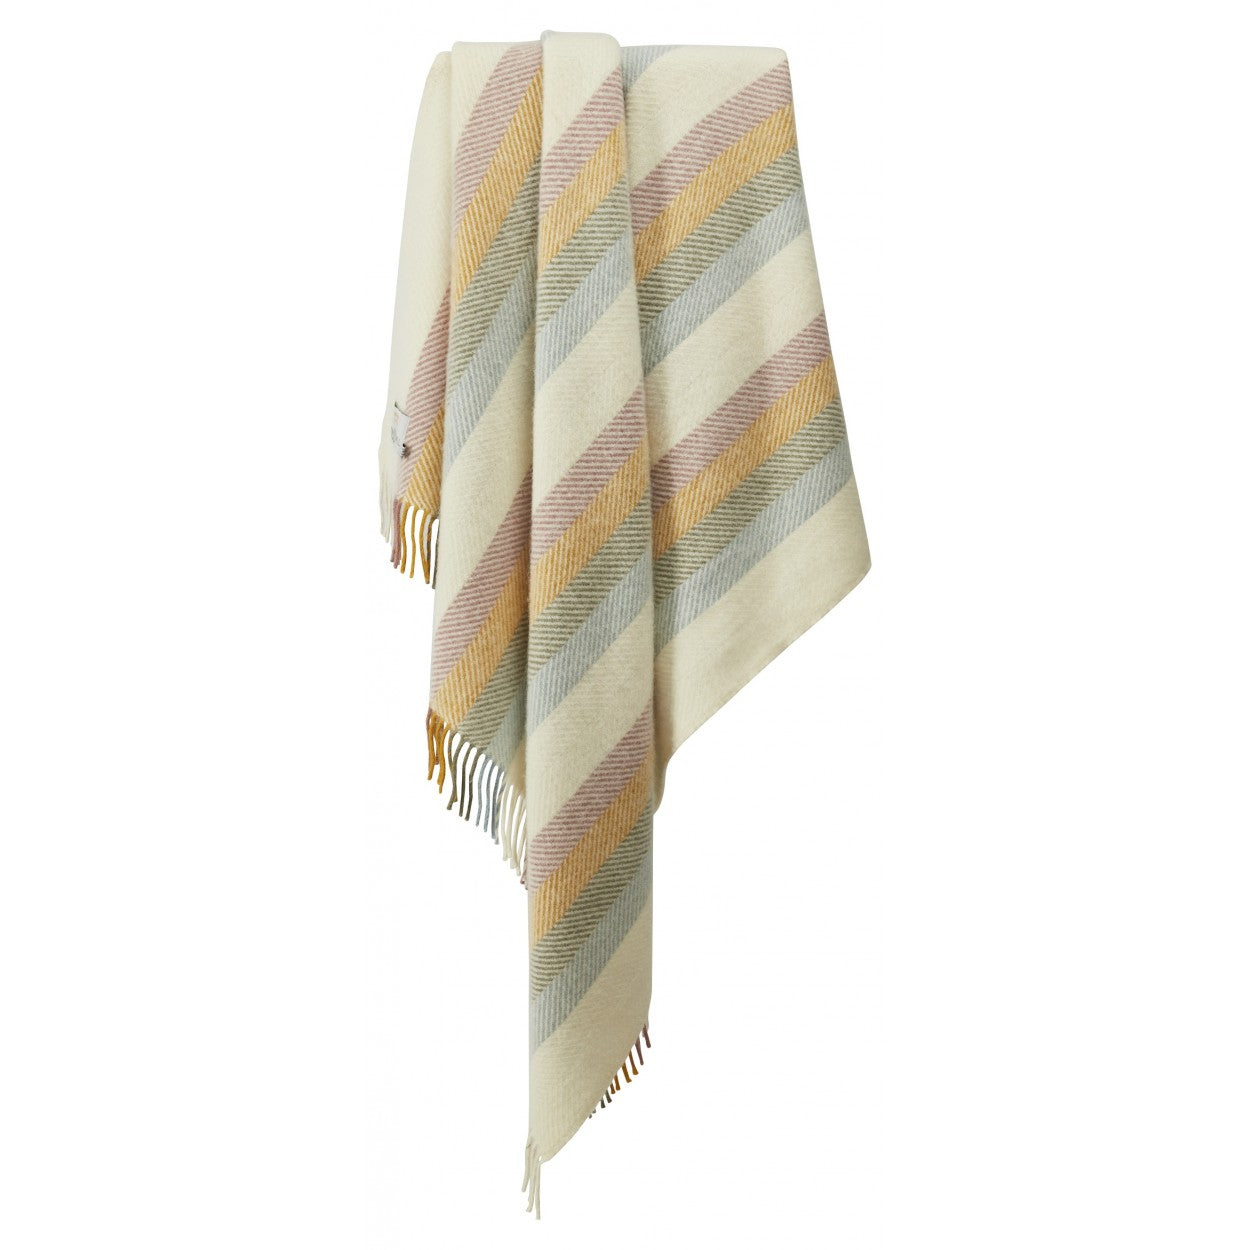 Wool Blanket - Primrose Stripe